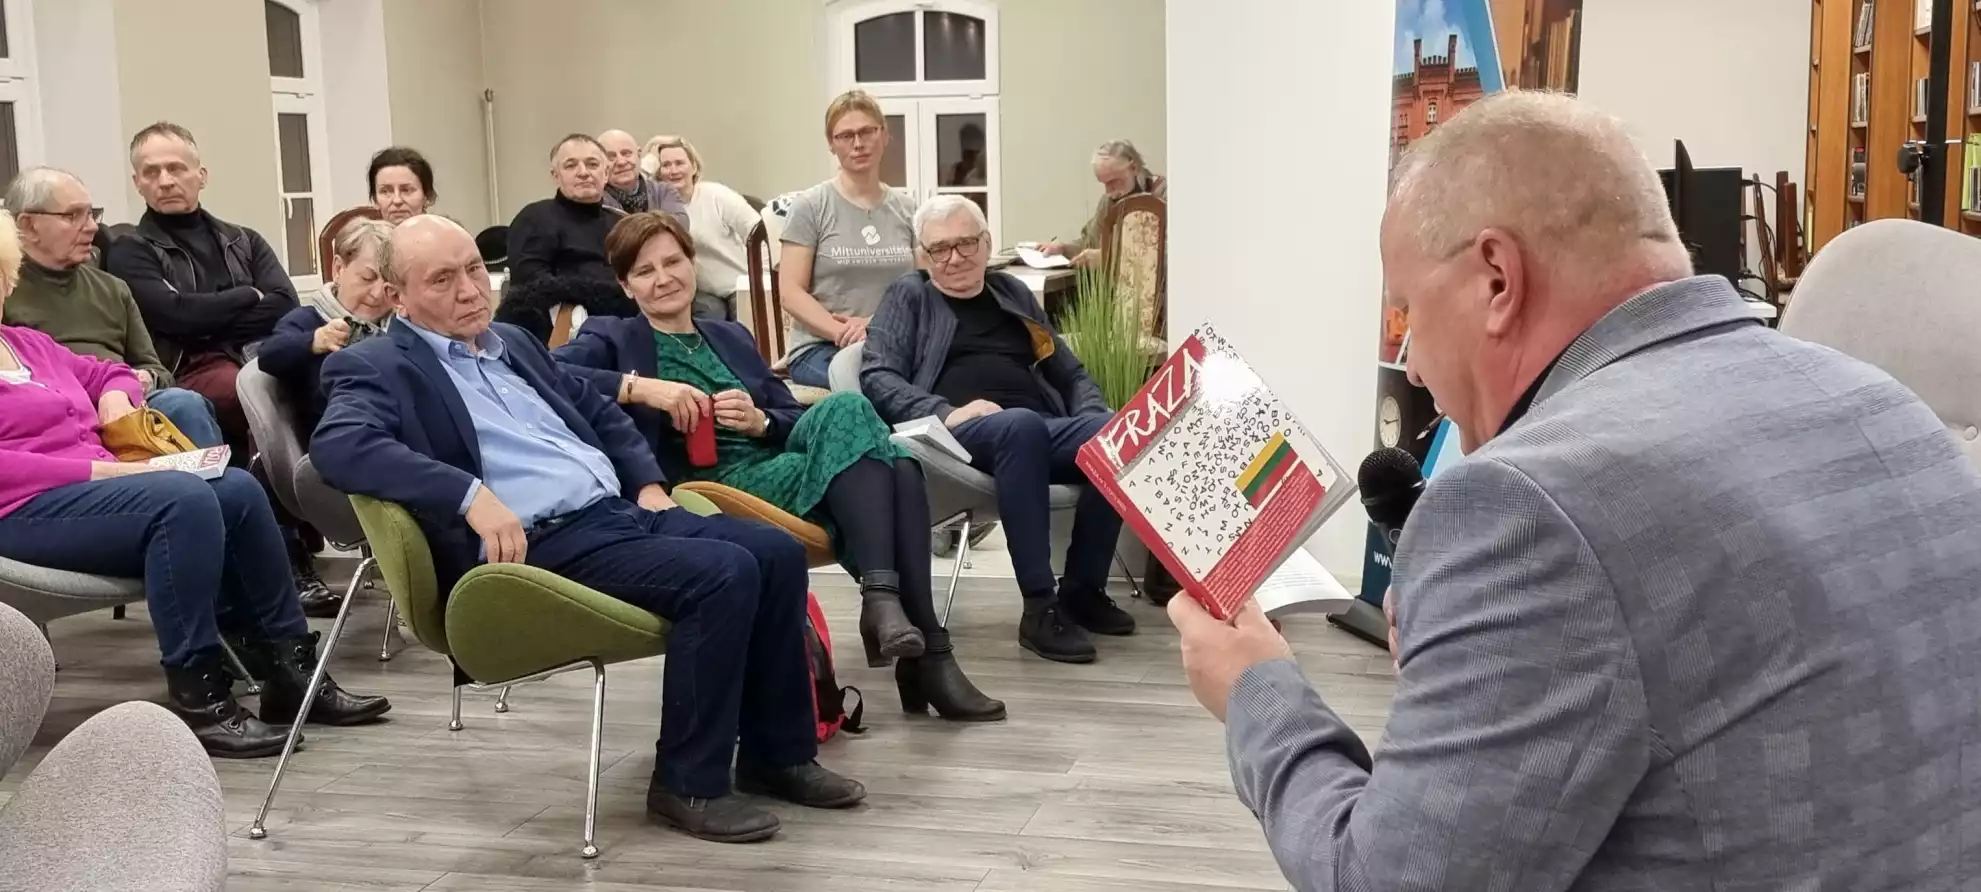 Prowadzący spotkanie Karol Maliszewski czyta fragment pisma literacko-artystycznego. - powiększenie